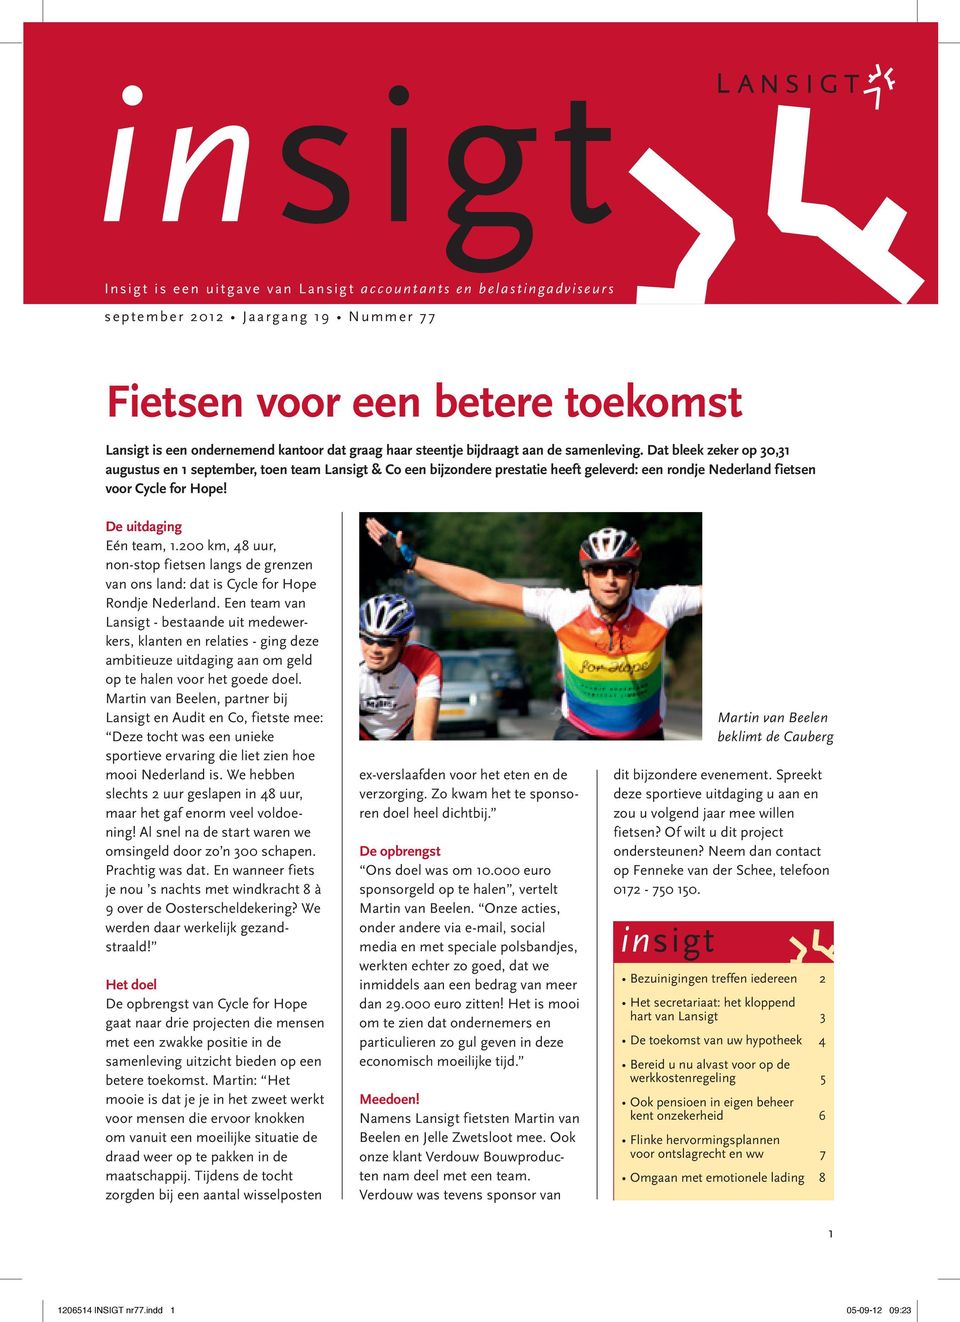 De uitdaging Eén team, 1.200 km, 48 uur, non-stop fietsen langs de grenzen van ons land: dat is Cycle for Hope Rondje Nederland.